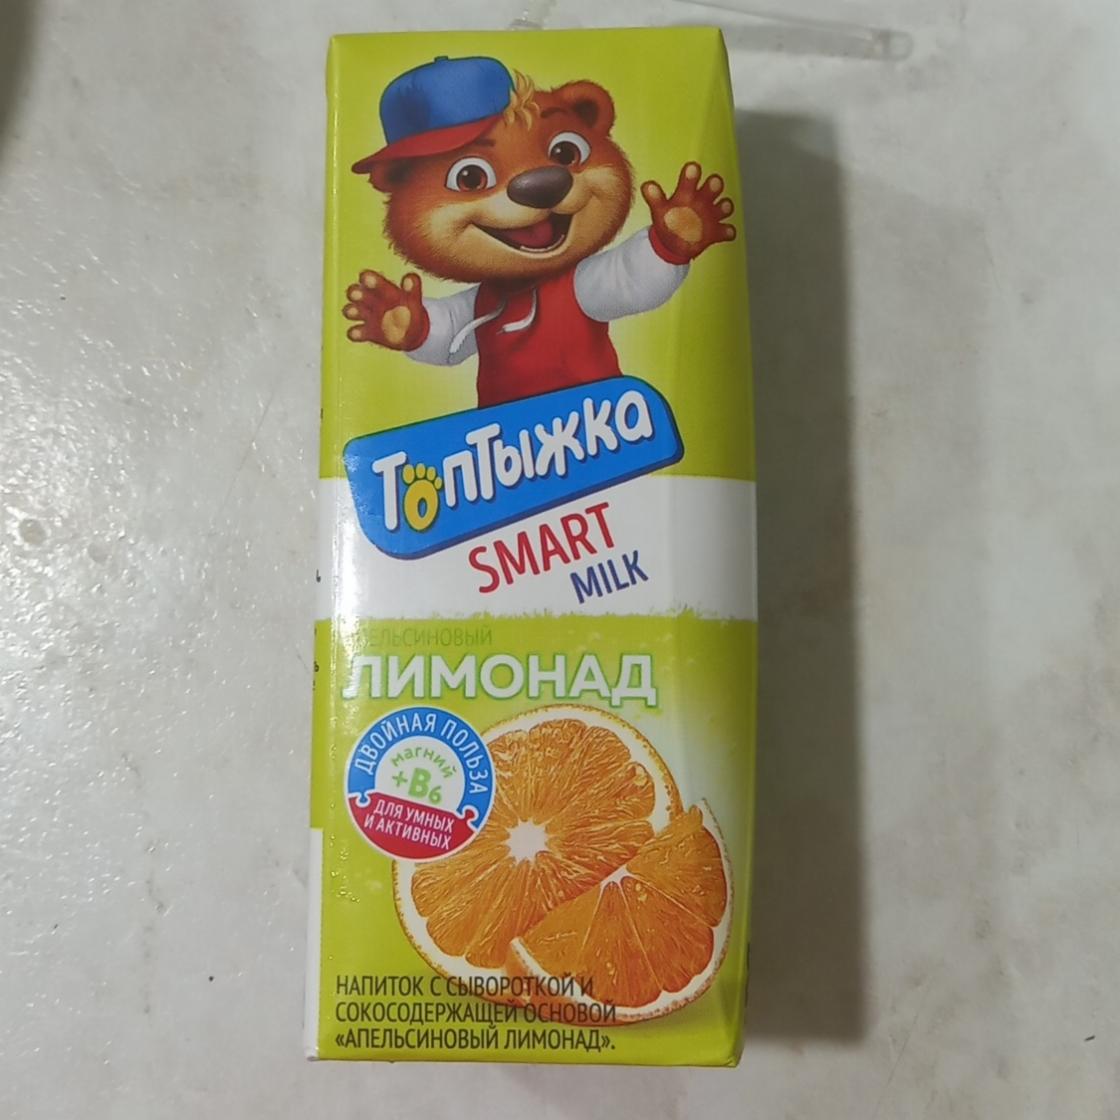 Фото - Напиток с сывороткой и сокосодержащей основой Апельсиновый лимонад Топтыжка